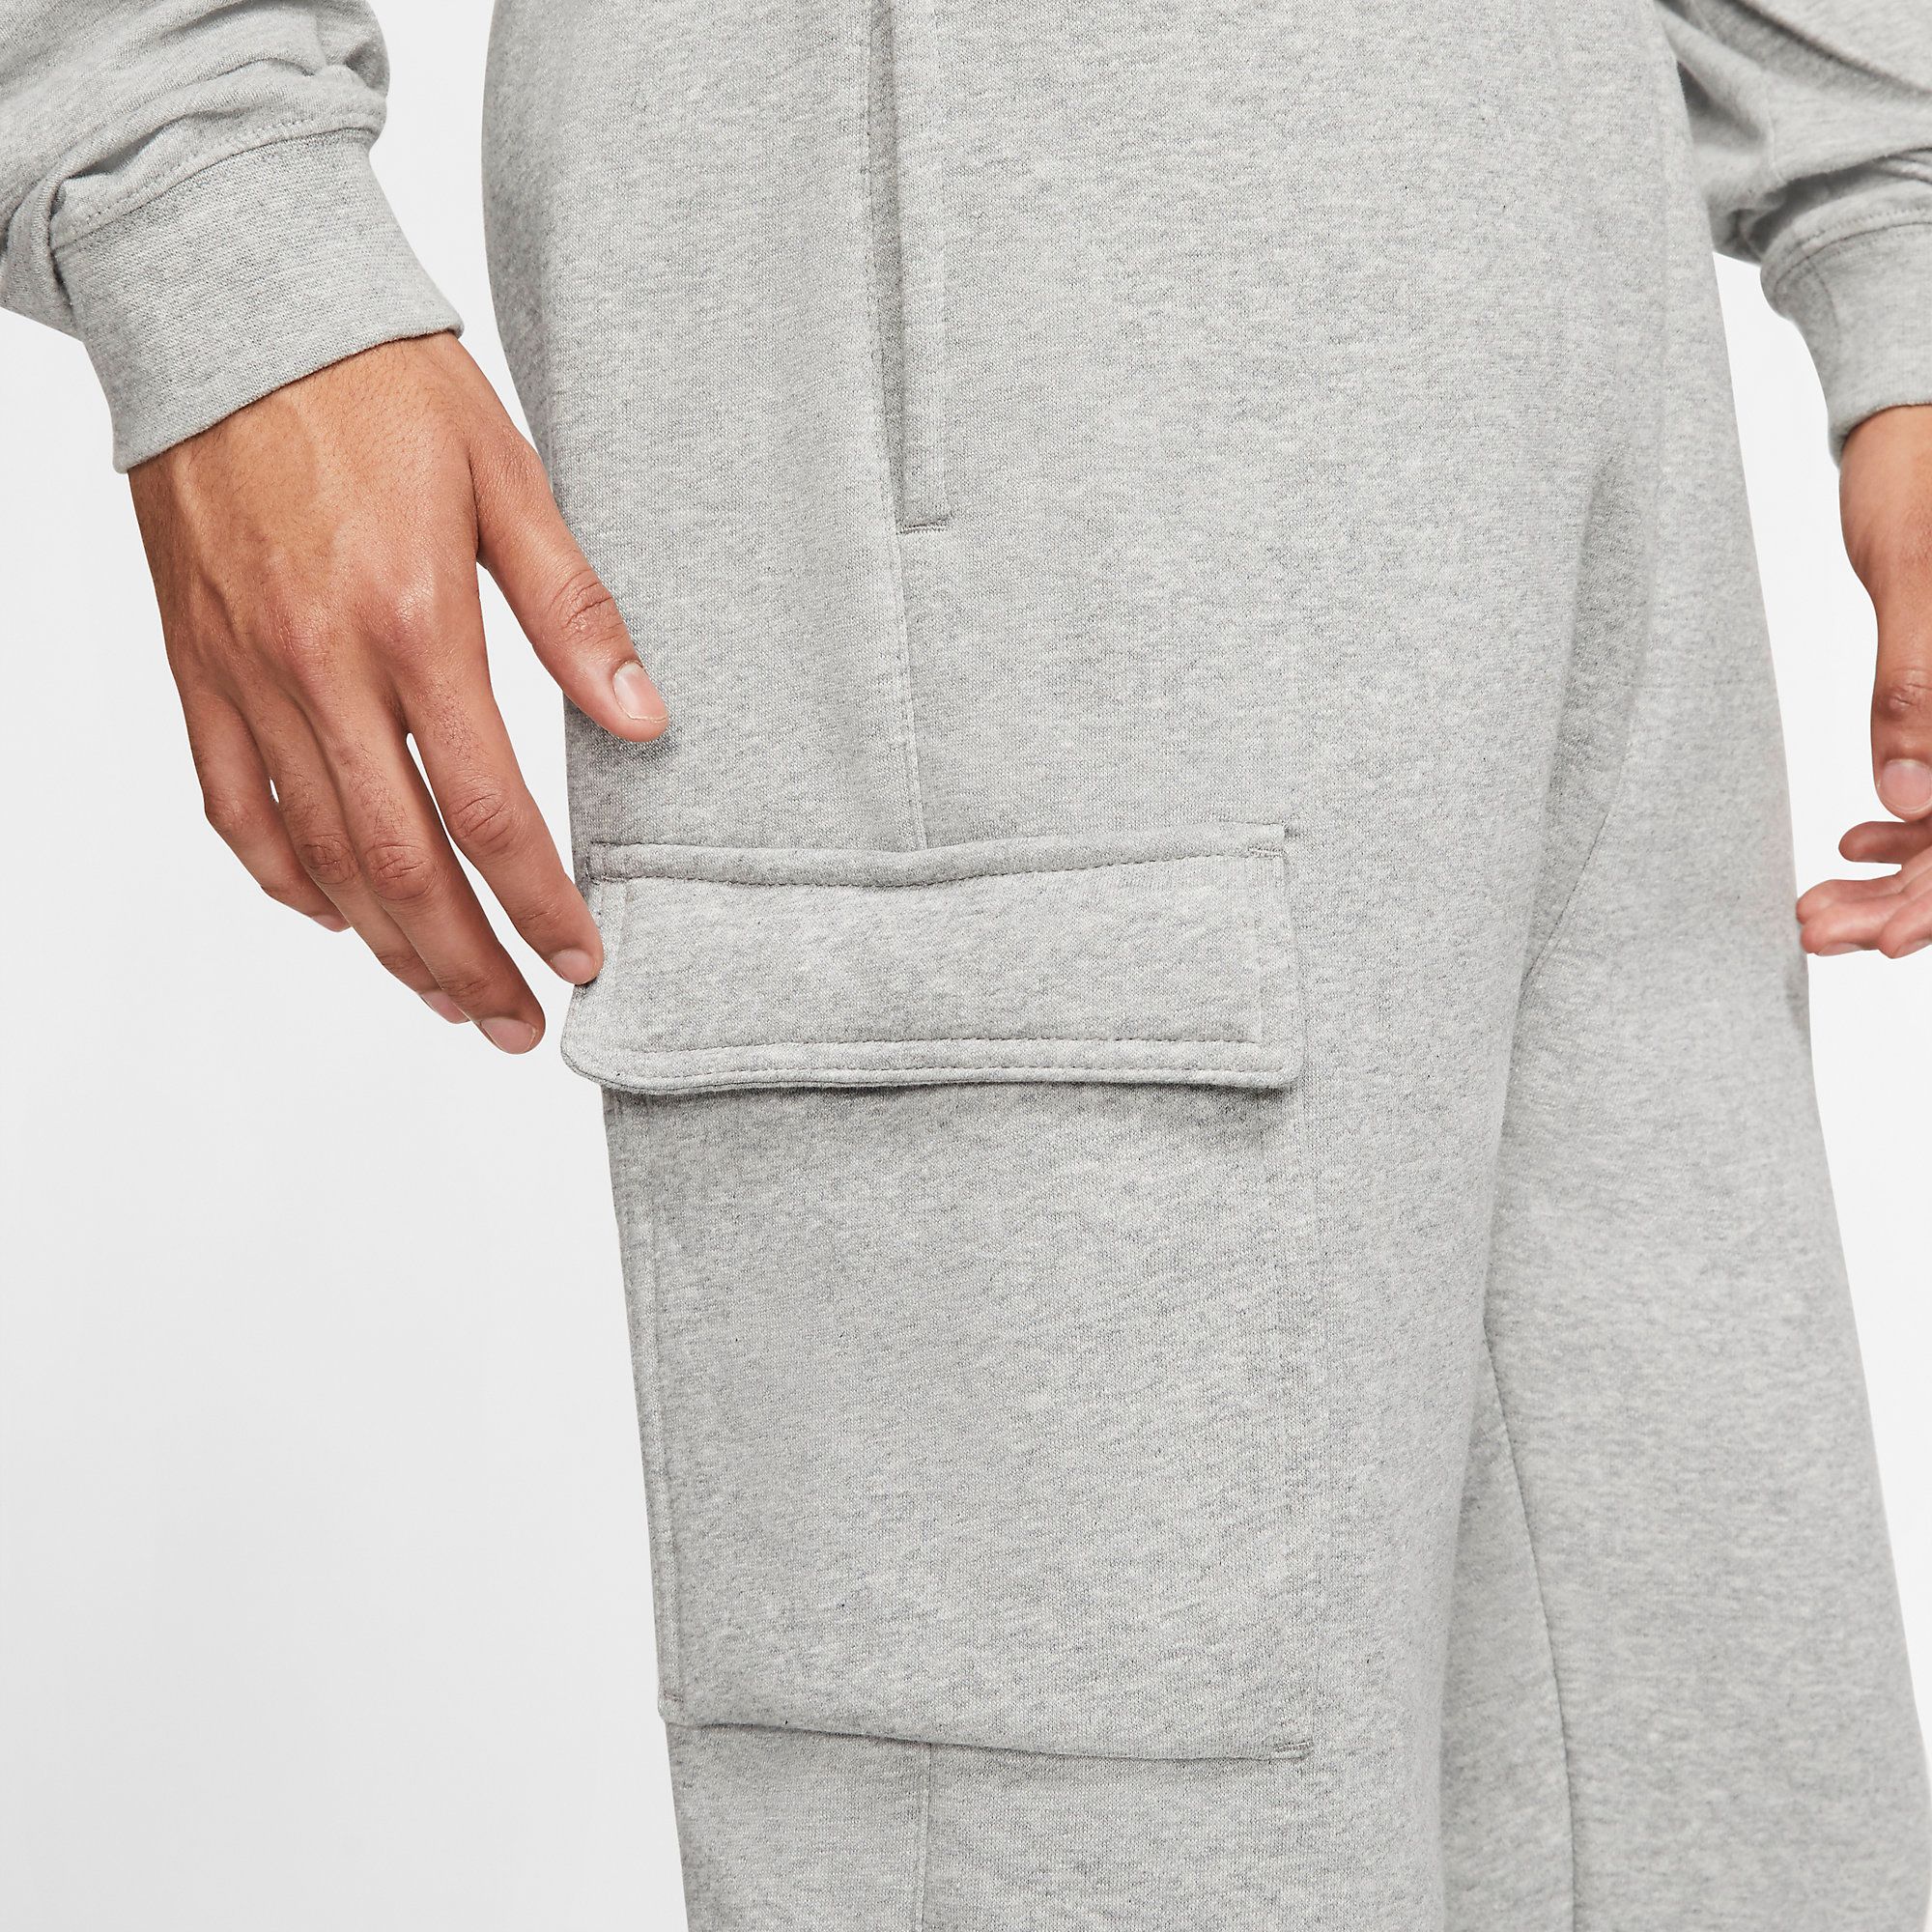  Nike Sportswear Club Cargo Fleece Pants - Grey 